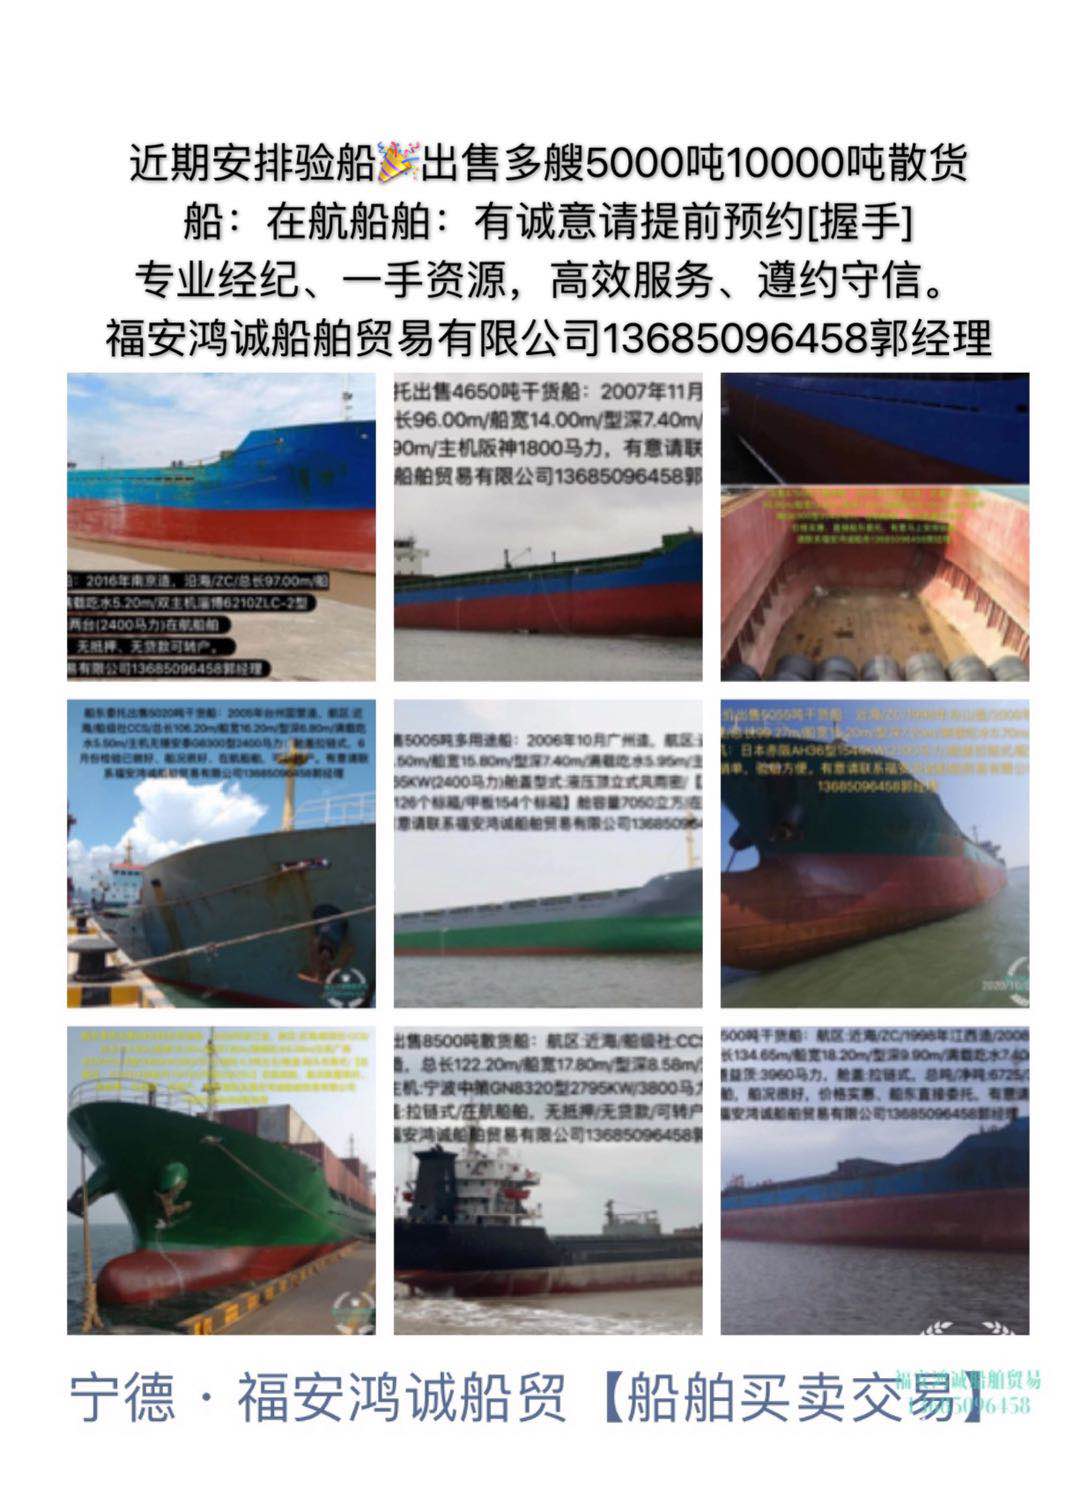 出售多艘3000吨10000吨散货船